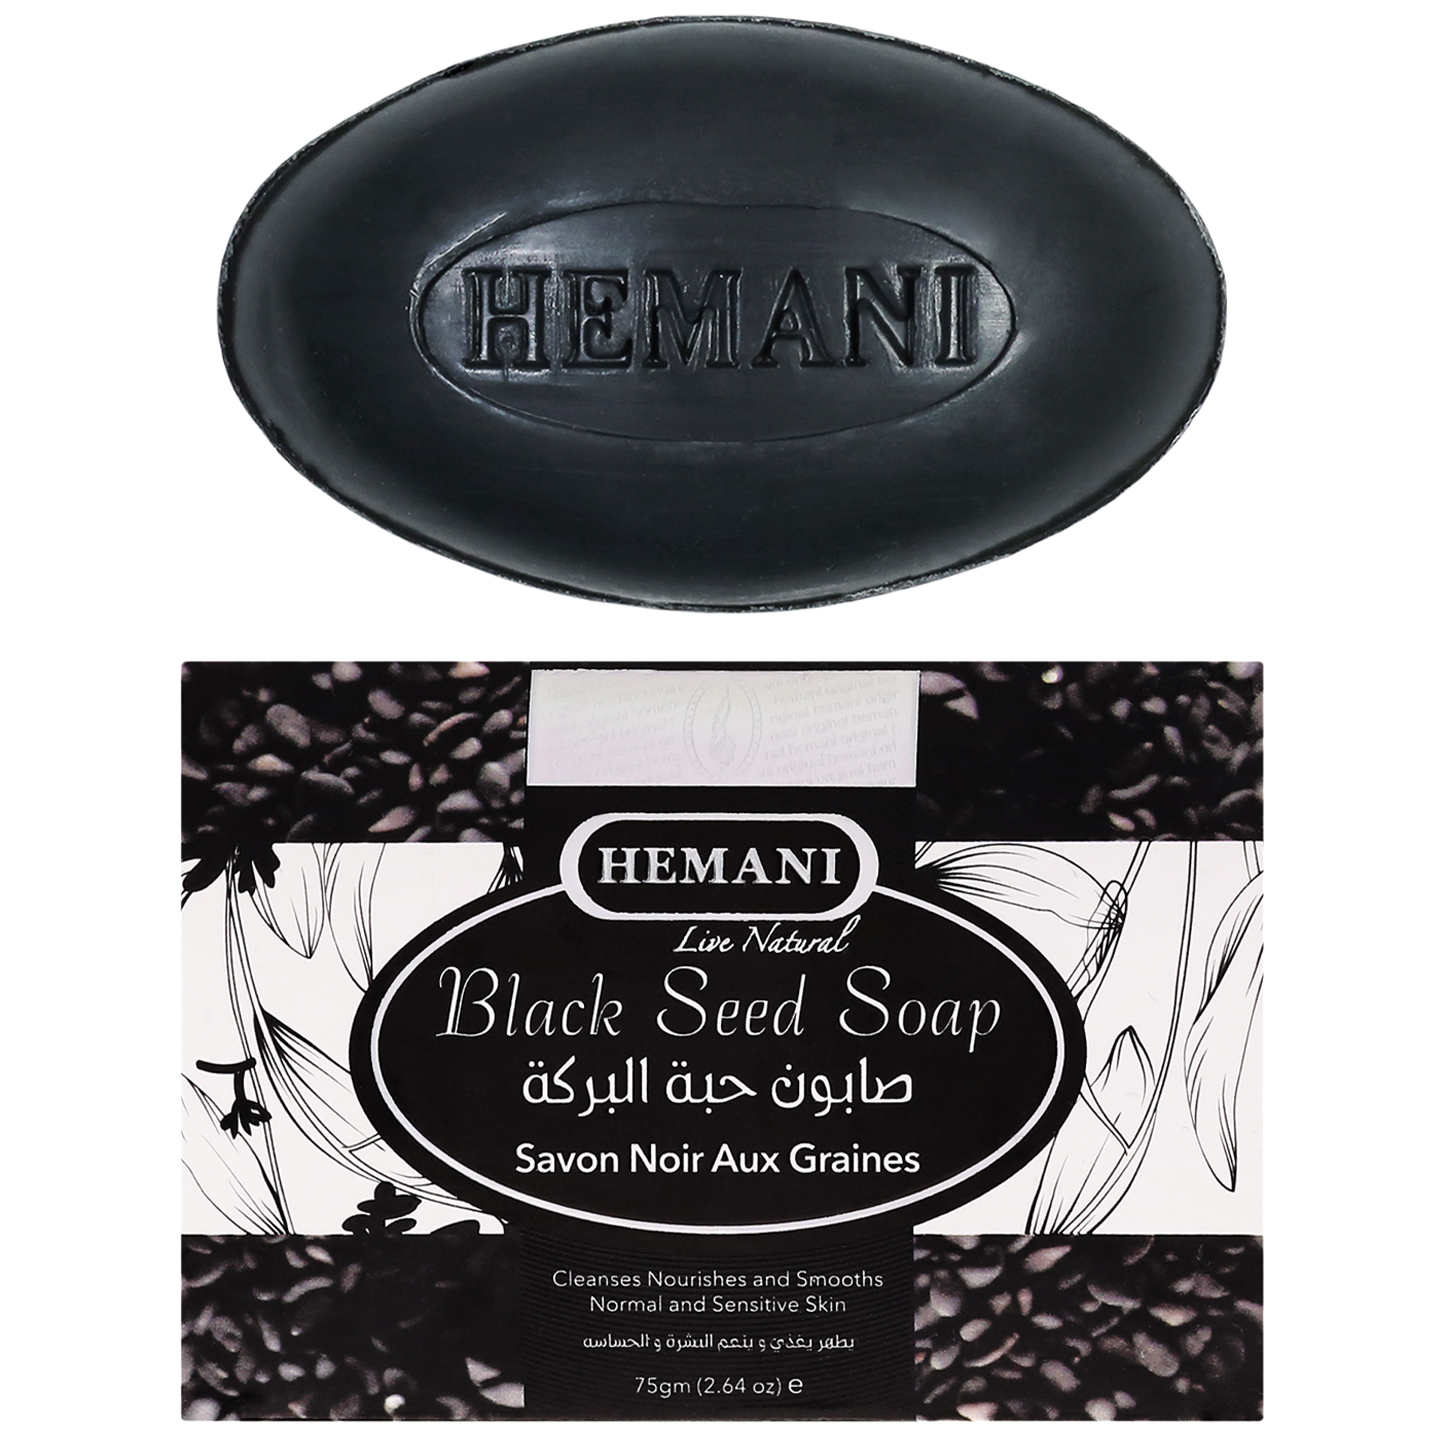 Натуральное мыло Hemani с черным тмином от сухости и воспалений 75 г натуральное мыло hemani с черным тмином от сухости и воспалений 75 г